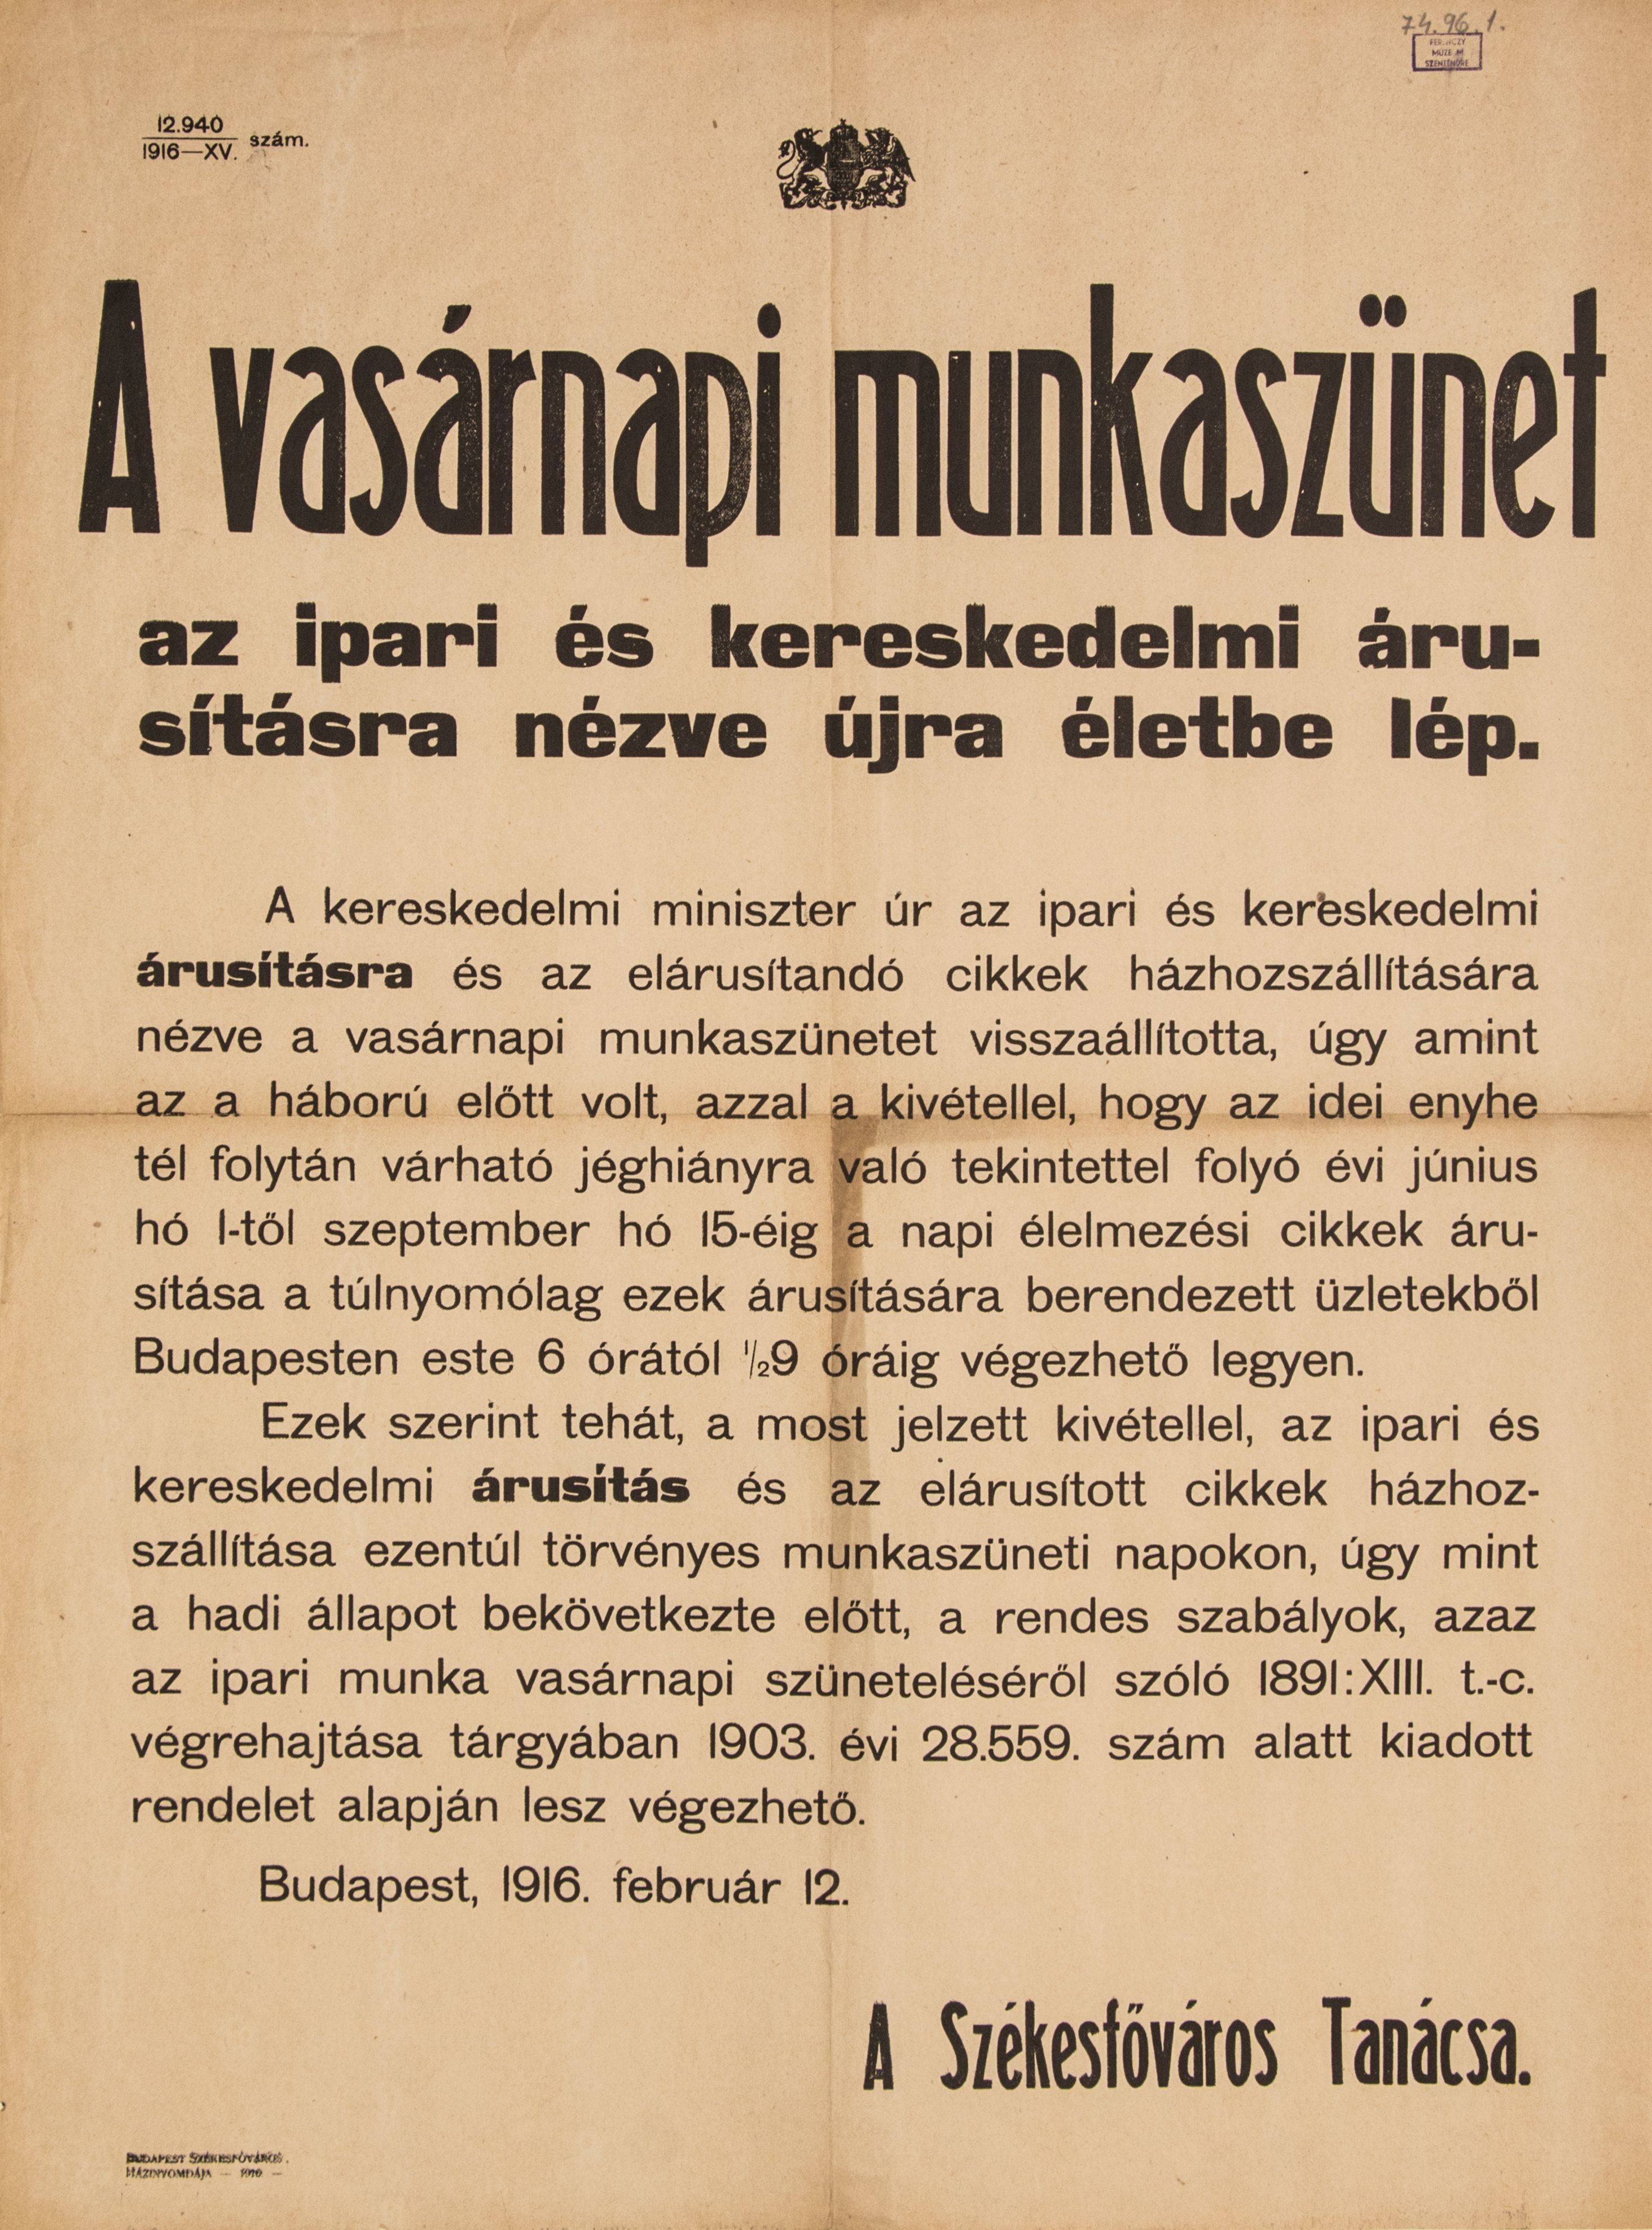 Vasárnapi munkaszünet az ipari és kereskedelmi árusításra nézve újra életbe lép, 1916.02.12. (Ferenczy Múzeumi Centrum CC BY-NC-SA)